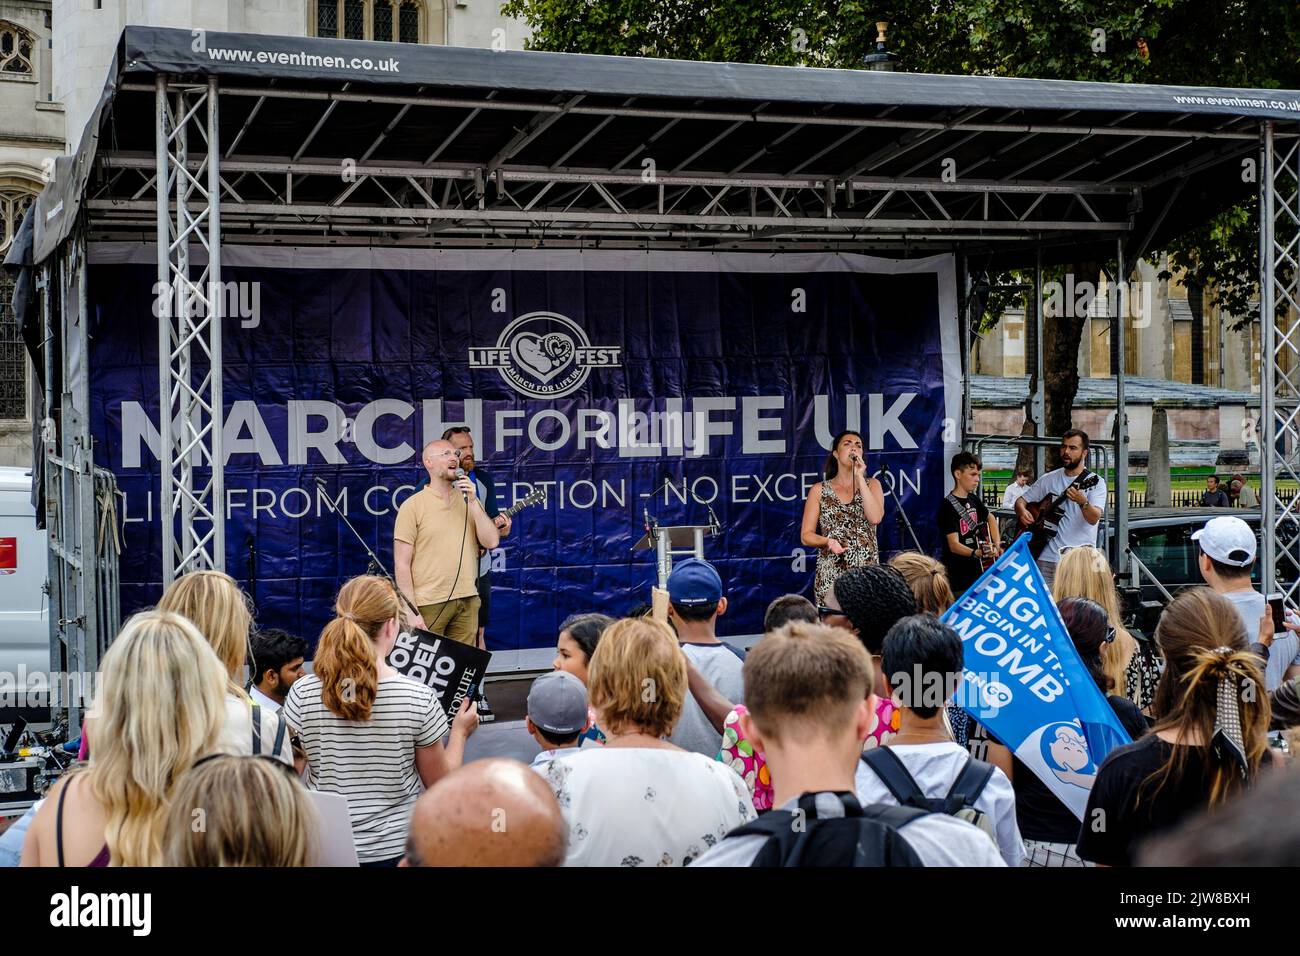 Londres, Reino Unido. 3 de septiembre de 2022. Miembros de grupos antiaborto se reúnen en Parliament Square, Westminster, después de una 'Marcha por la Vida' anual en el centro de Londres. Los activistas pro-elección del aborto también se reúnen para expresar su oposición al movimiento anti-aborto. En la foto: El mensaje central de los activistas antiaborto de la vida desde la concepción, No exception, en exhibición en el mitin. En la foto: Los activistas contra el aborto se reúnen para escuchar discursos, cantar y orar durante el mitin Marcha por la Vida en Londres. Foto de stock